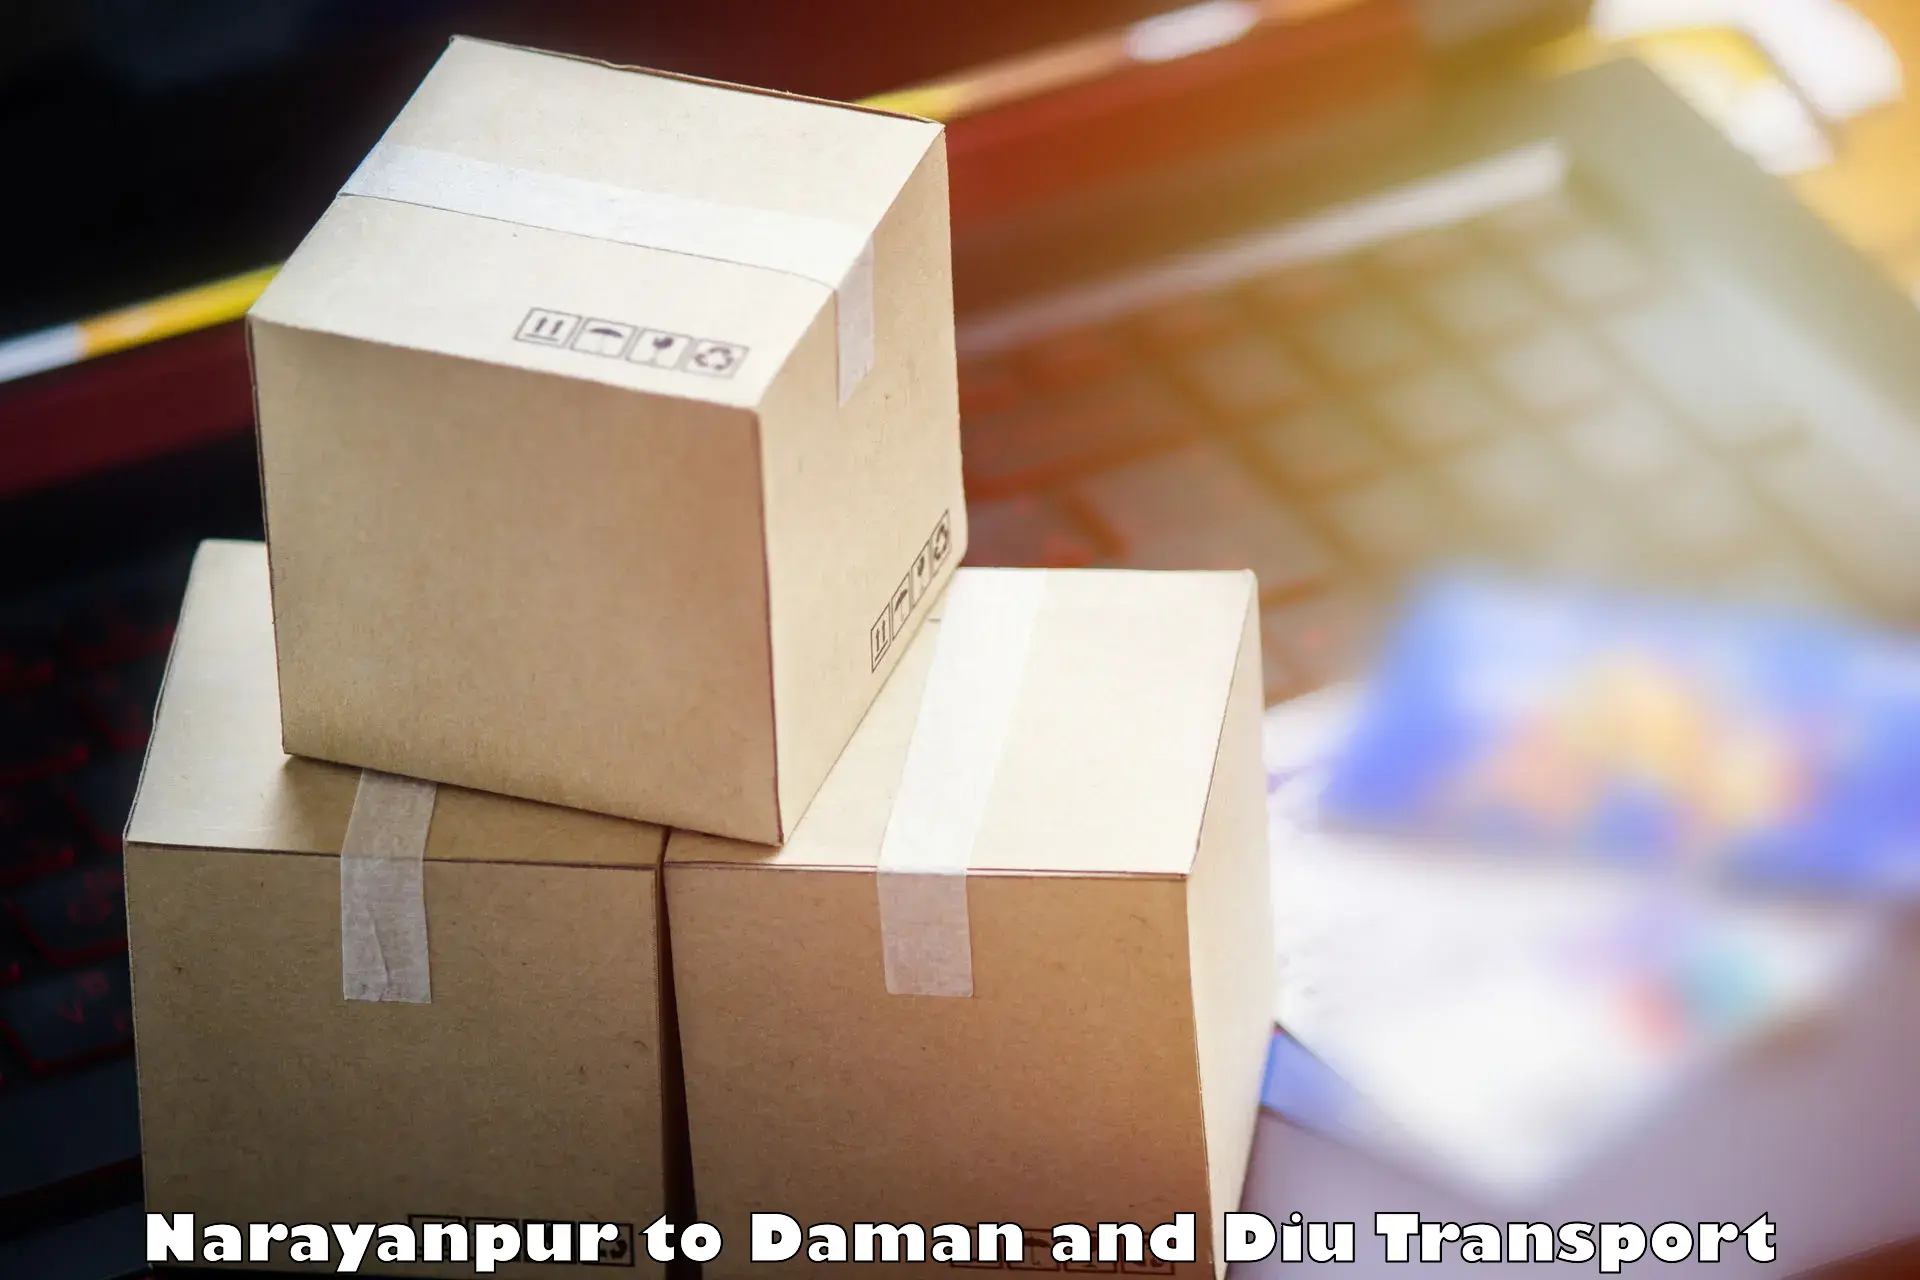 Furniture transport service in Narayanpur to Diu